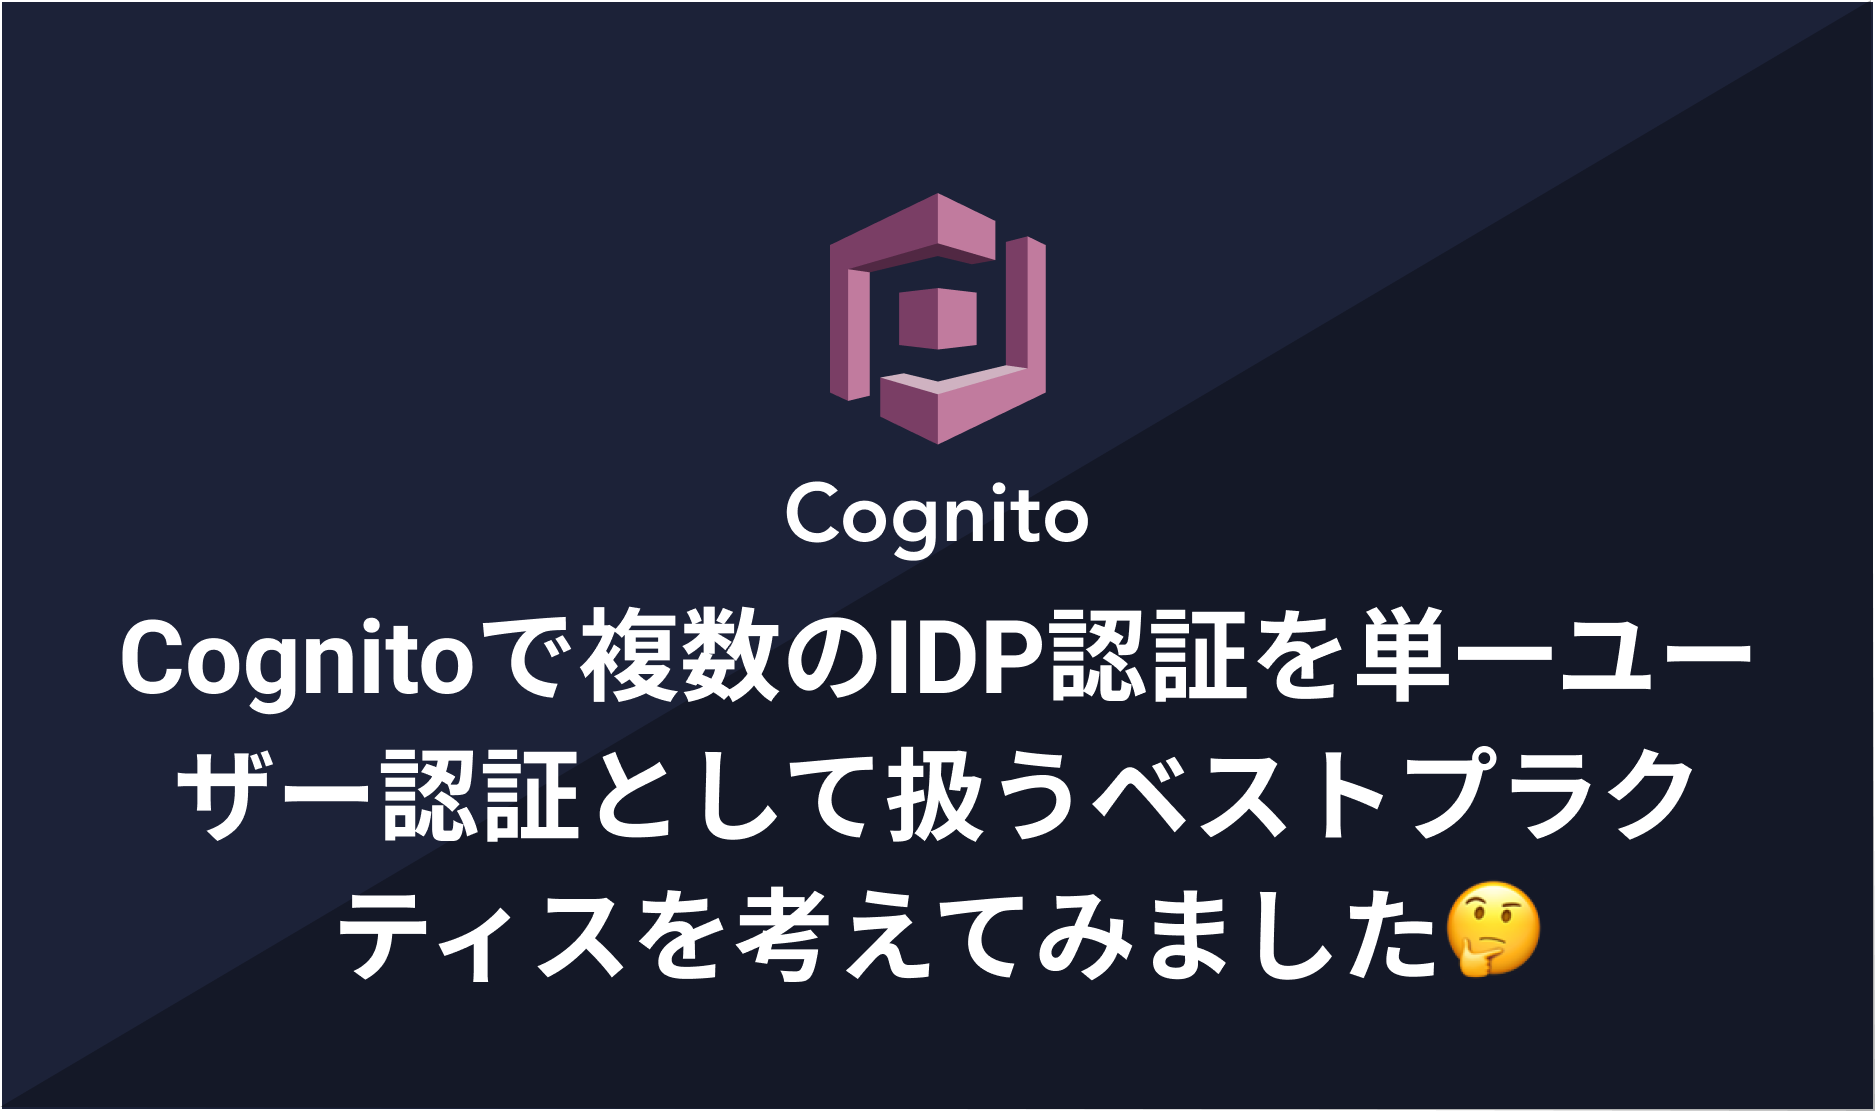 Cognitoで複数のIDP認証を単一ユーザー認証として扱うベストプラクティスを考えてみました🤔